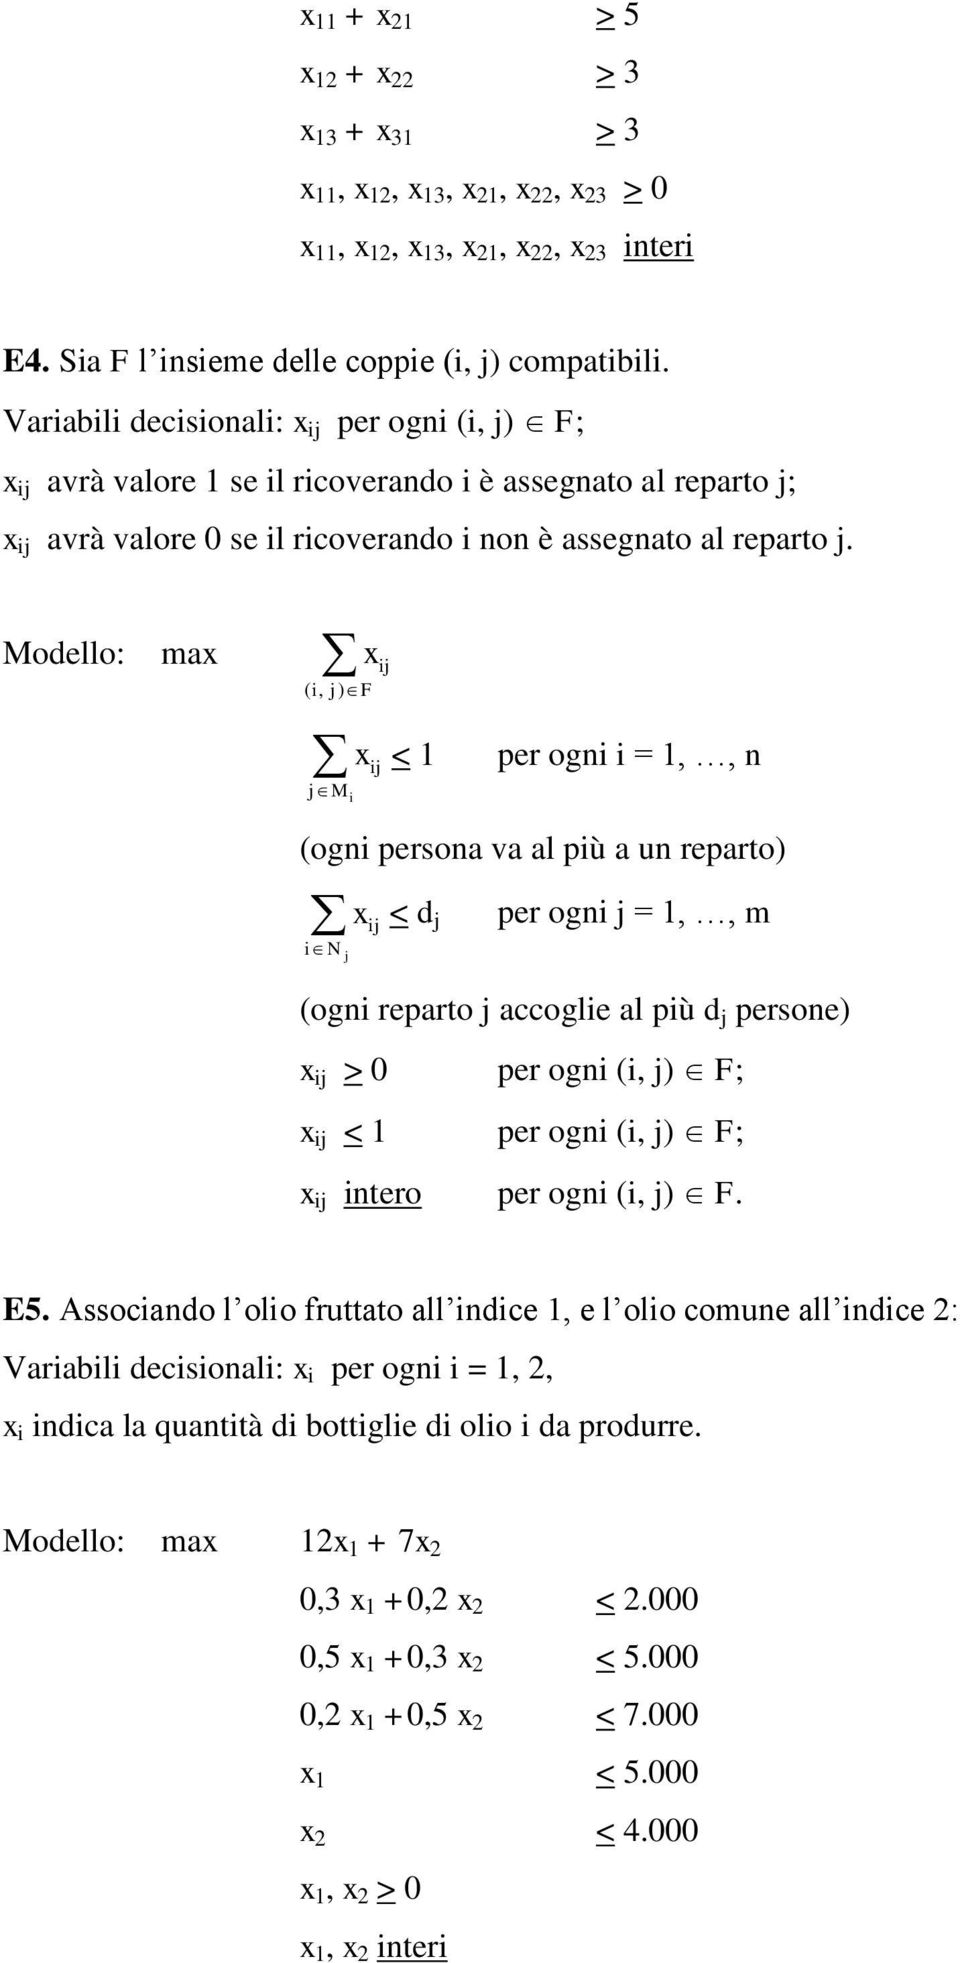 Modello: max ( i, j) F jm i < 1 per ogni i = 1,, n (ogni persona va al più a un reparto) in j x < d j ij per ogni j = 1,, m (ogni reparto j accoglie al più d j persone) > 0 per ogni (i, j) F; < 1 per